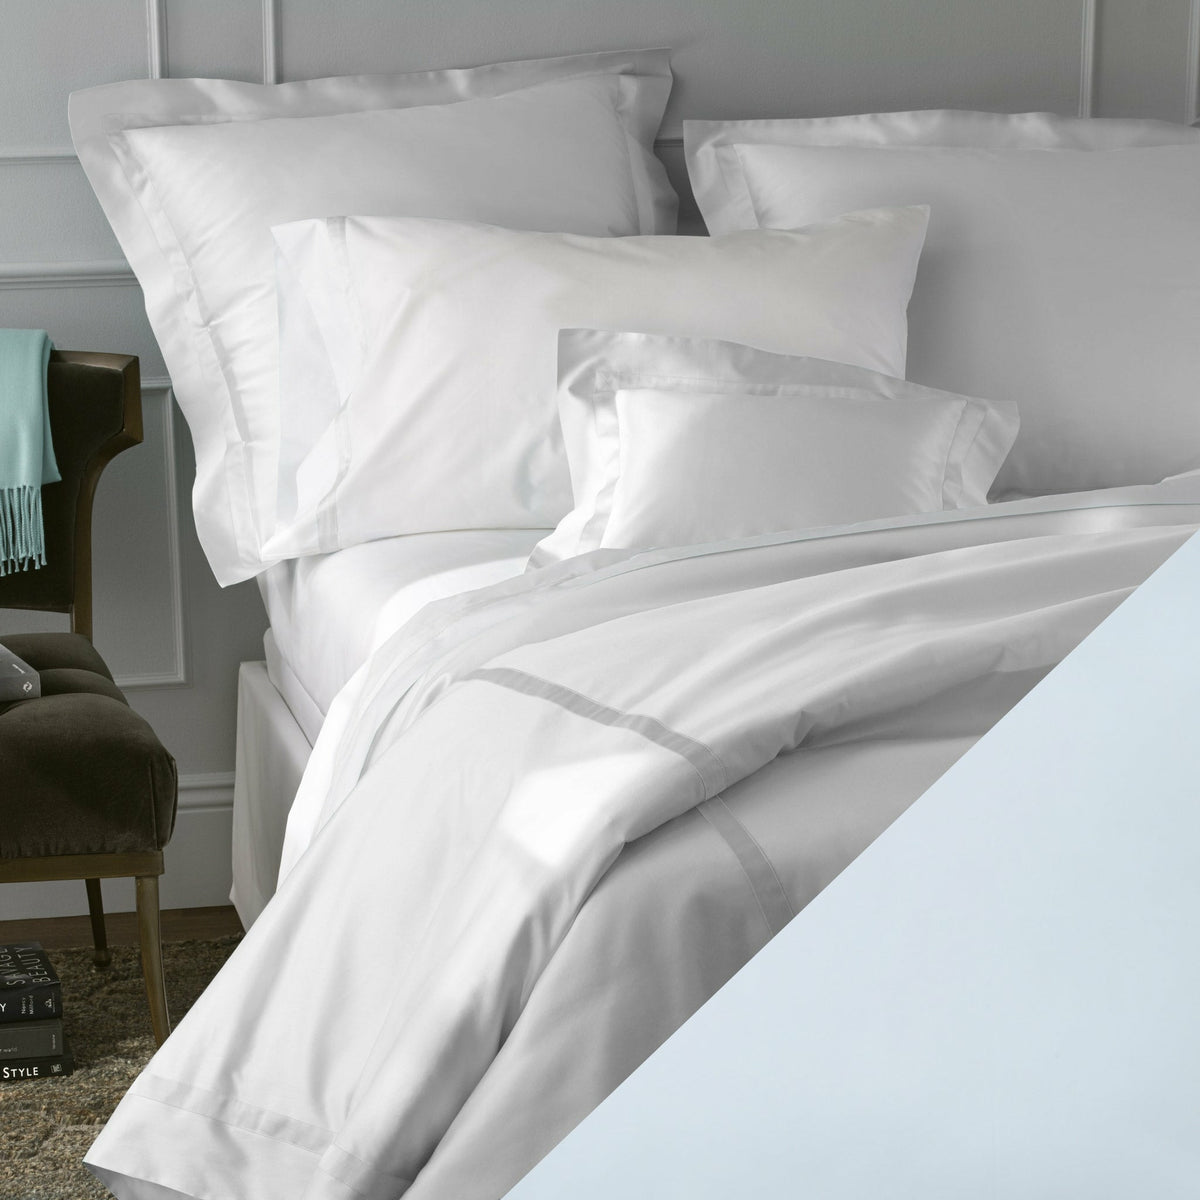 Matouk Blue Nocturne Bedding Sheets Pillow Cases Shams Fine Linens